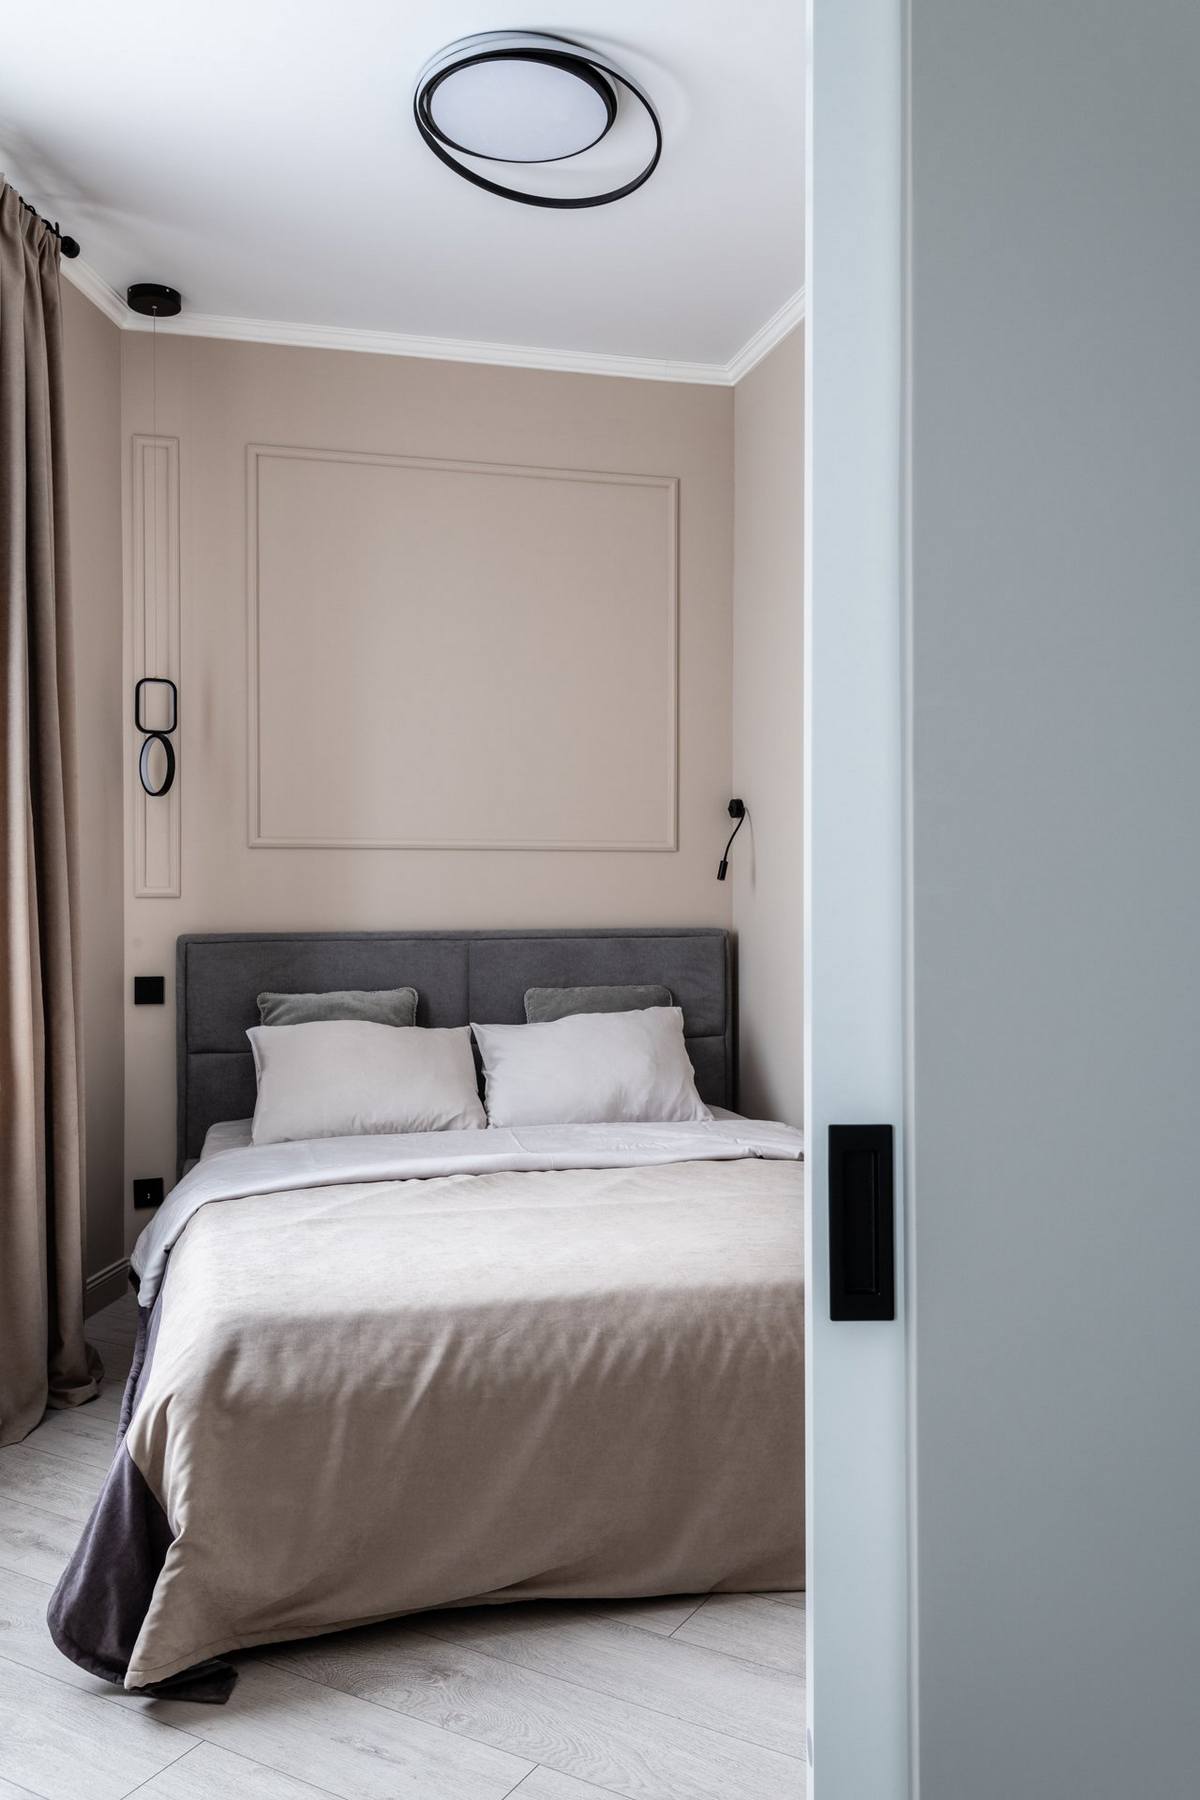 Khu vực phòng ngủ được bố trí riêng biệt với cánh cửa trượt tiện lợi, tường sơn màu be ấm áp, tương phản với trần nhà màu trắng cho cảm giác cao thoáng.